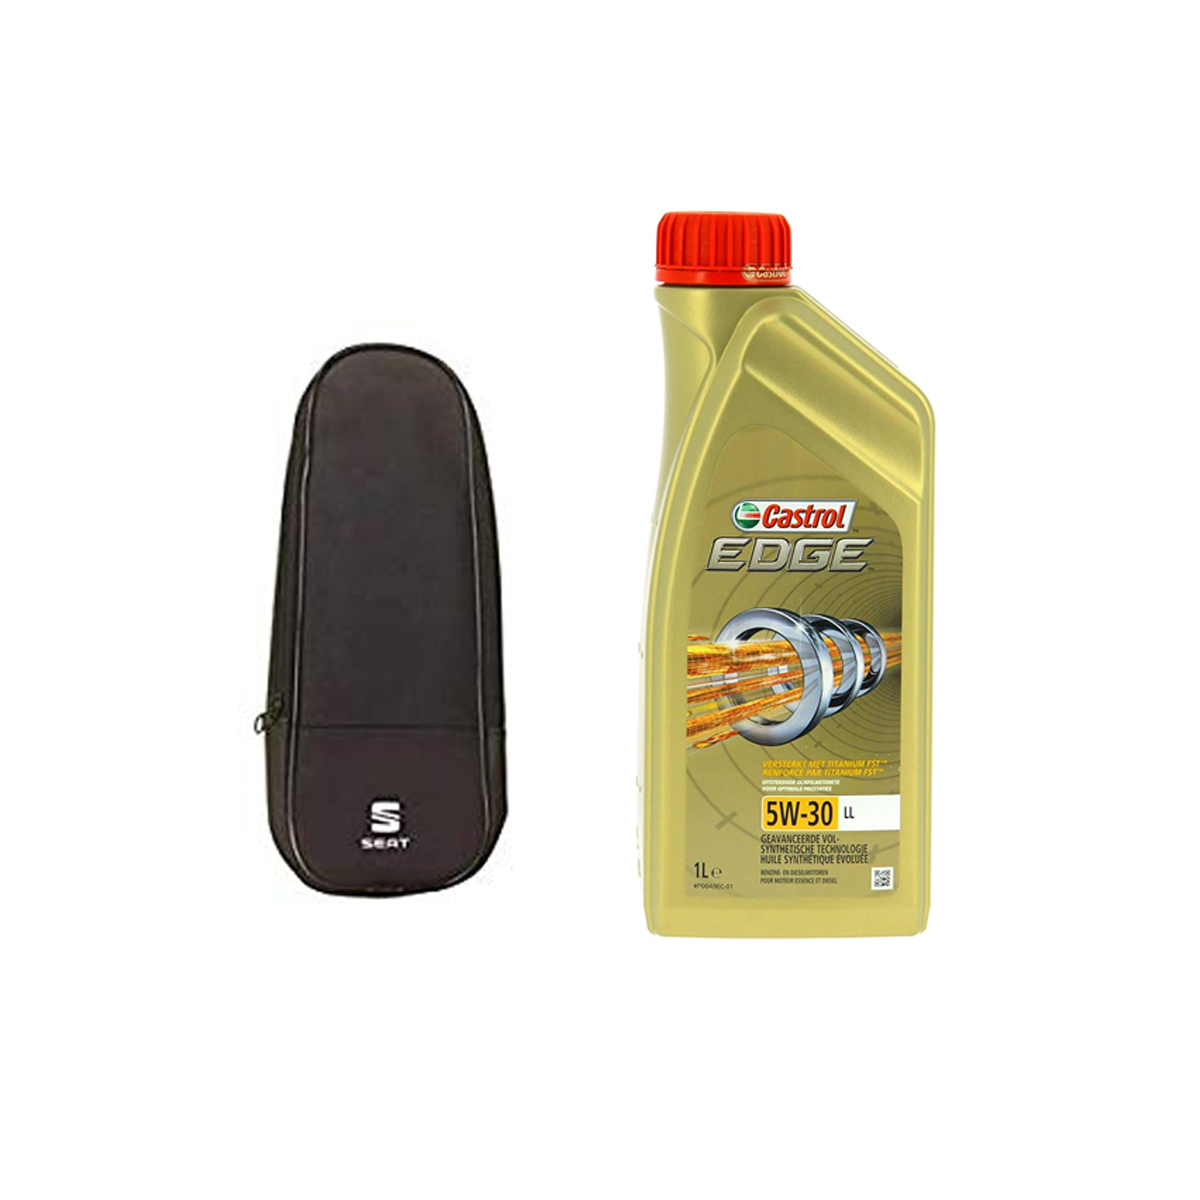 SEAT Seat Oil Pack - Seat Oil Pack - SEAT Direct Parts